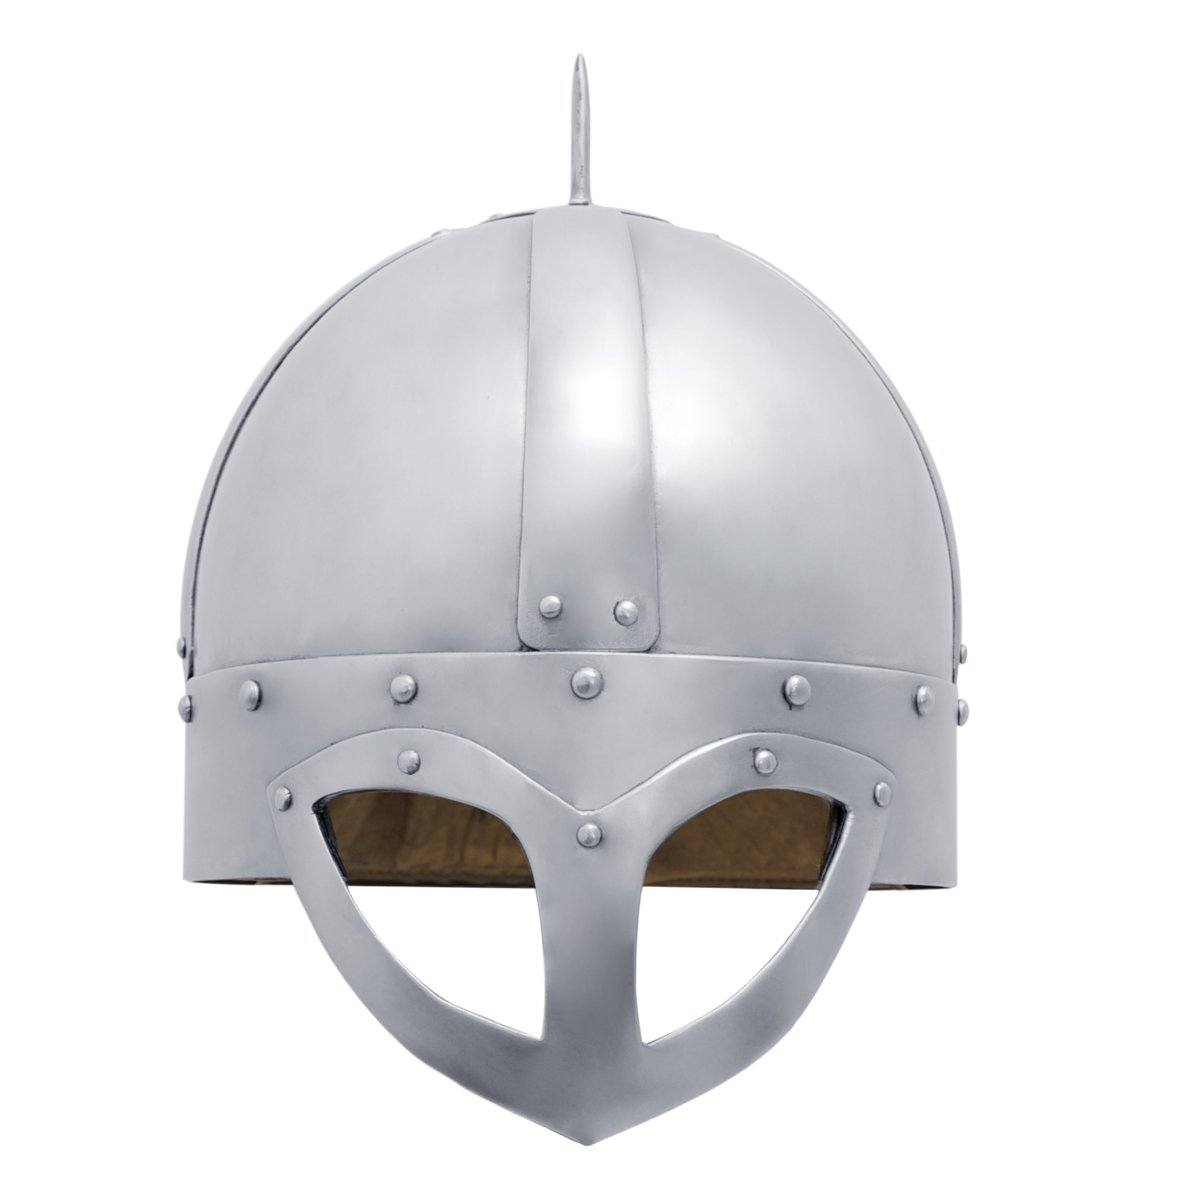 The Gjermundbu helmet, Size L